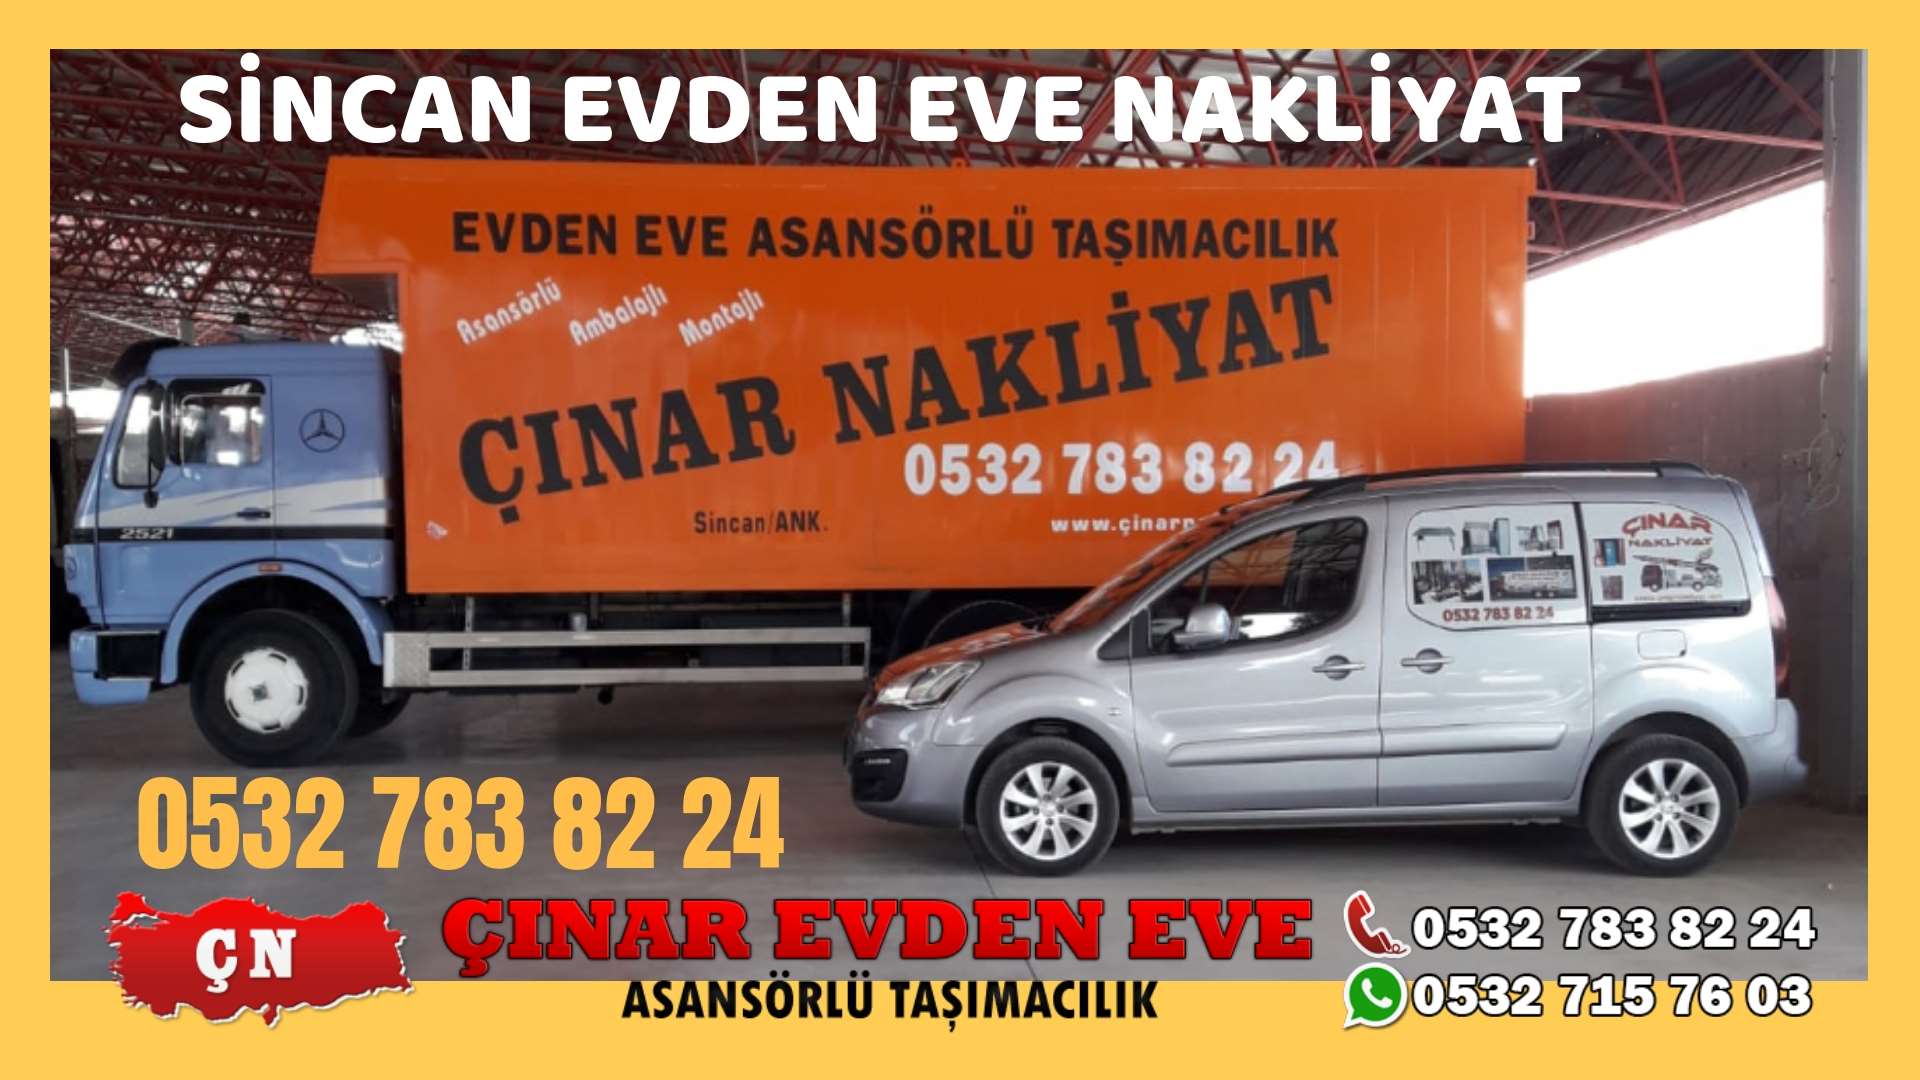 Ankara Nallıhan Evden eve ev taşıma sincan nakliye fiyatları 0532 715 76 03